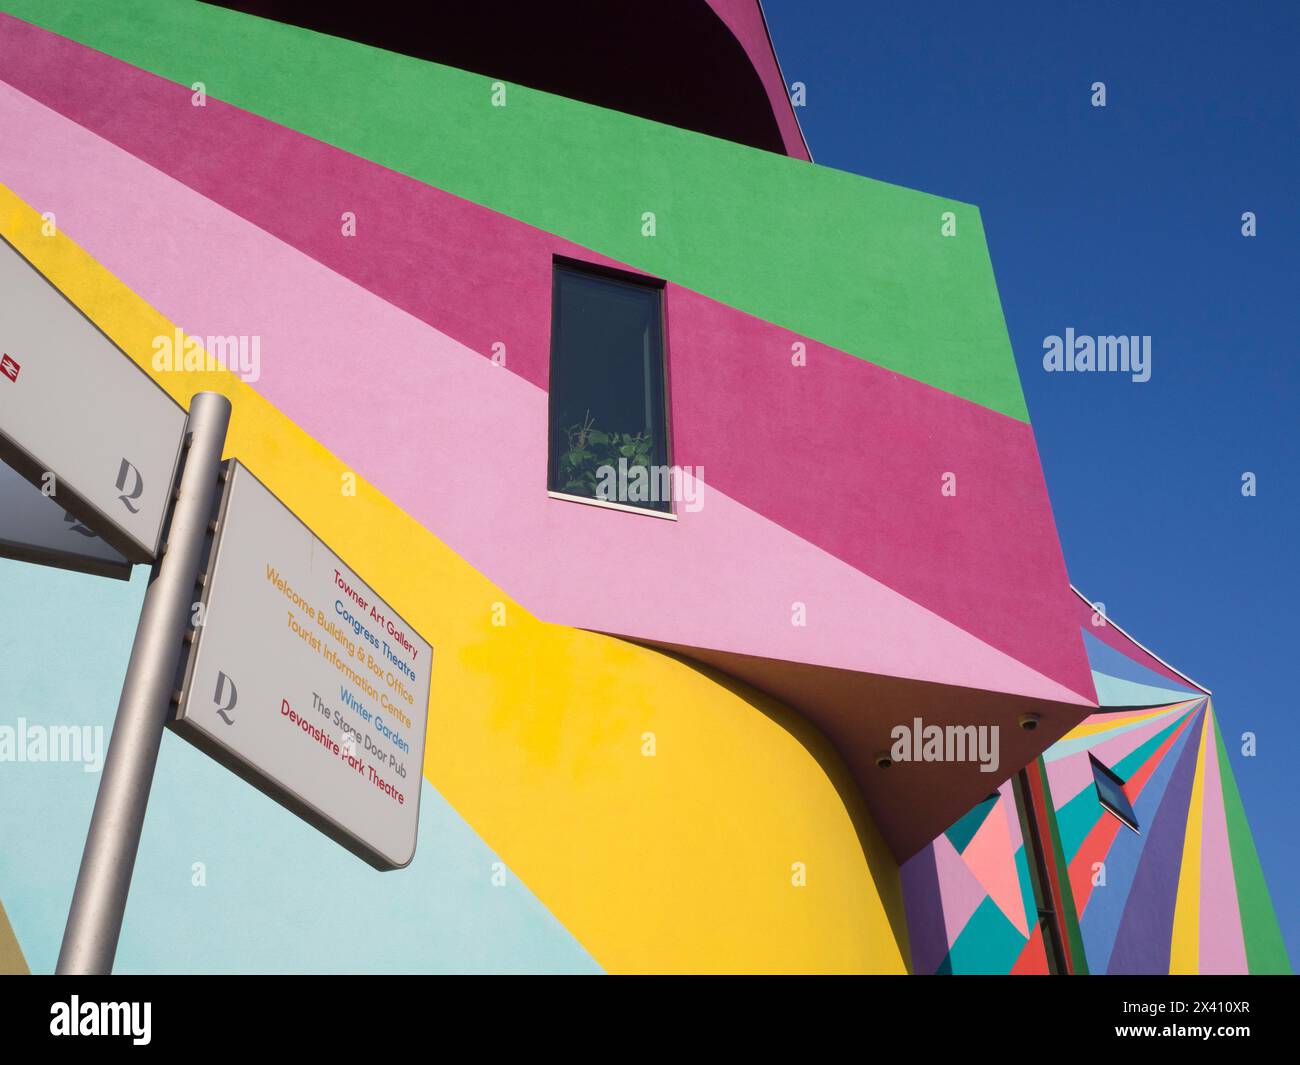 Pareti esterne su una galleria d'arte dipinte in colori vivaci contro un cielo blu e un cartello con una lista di punti di riferimento locali Foto Stock